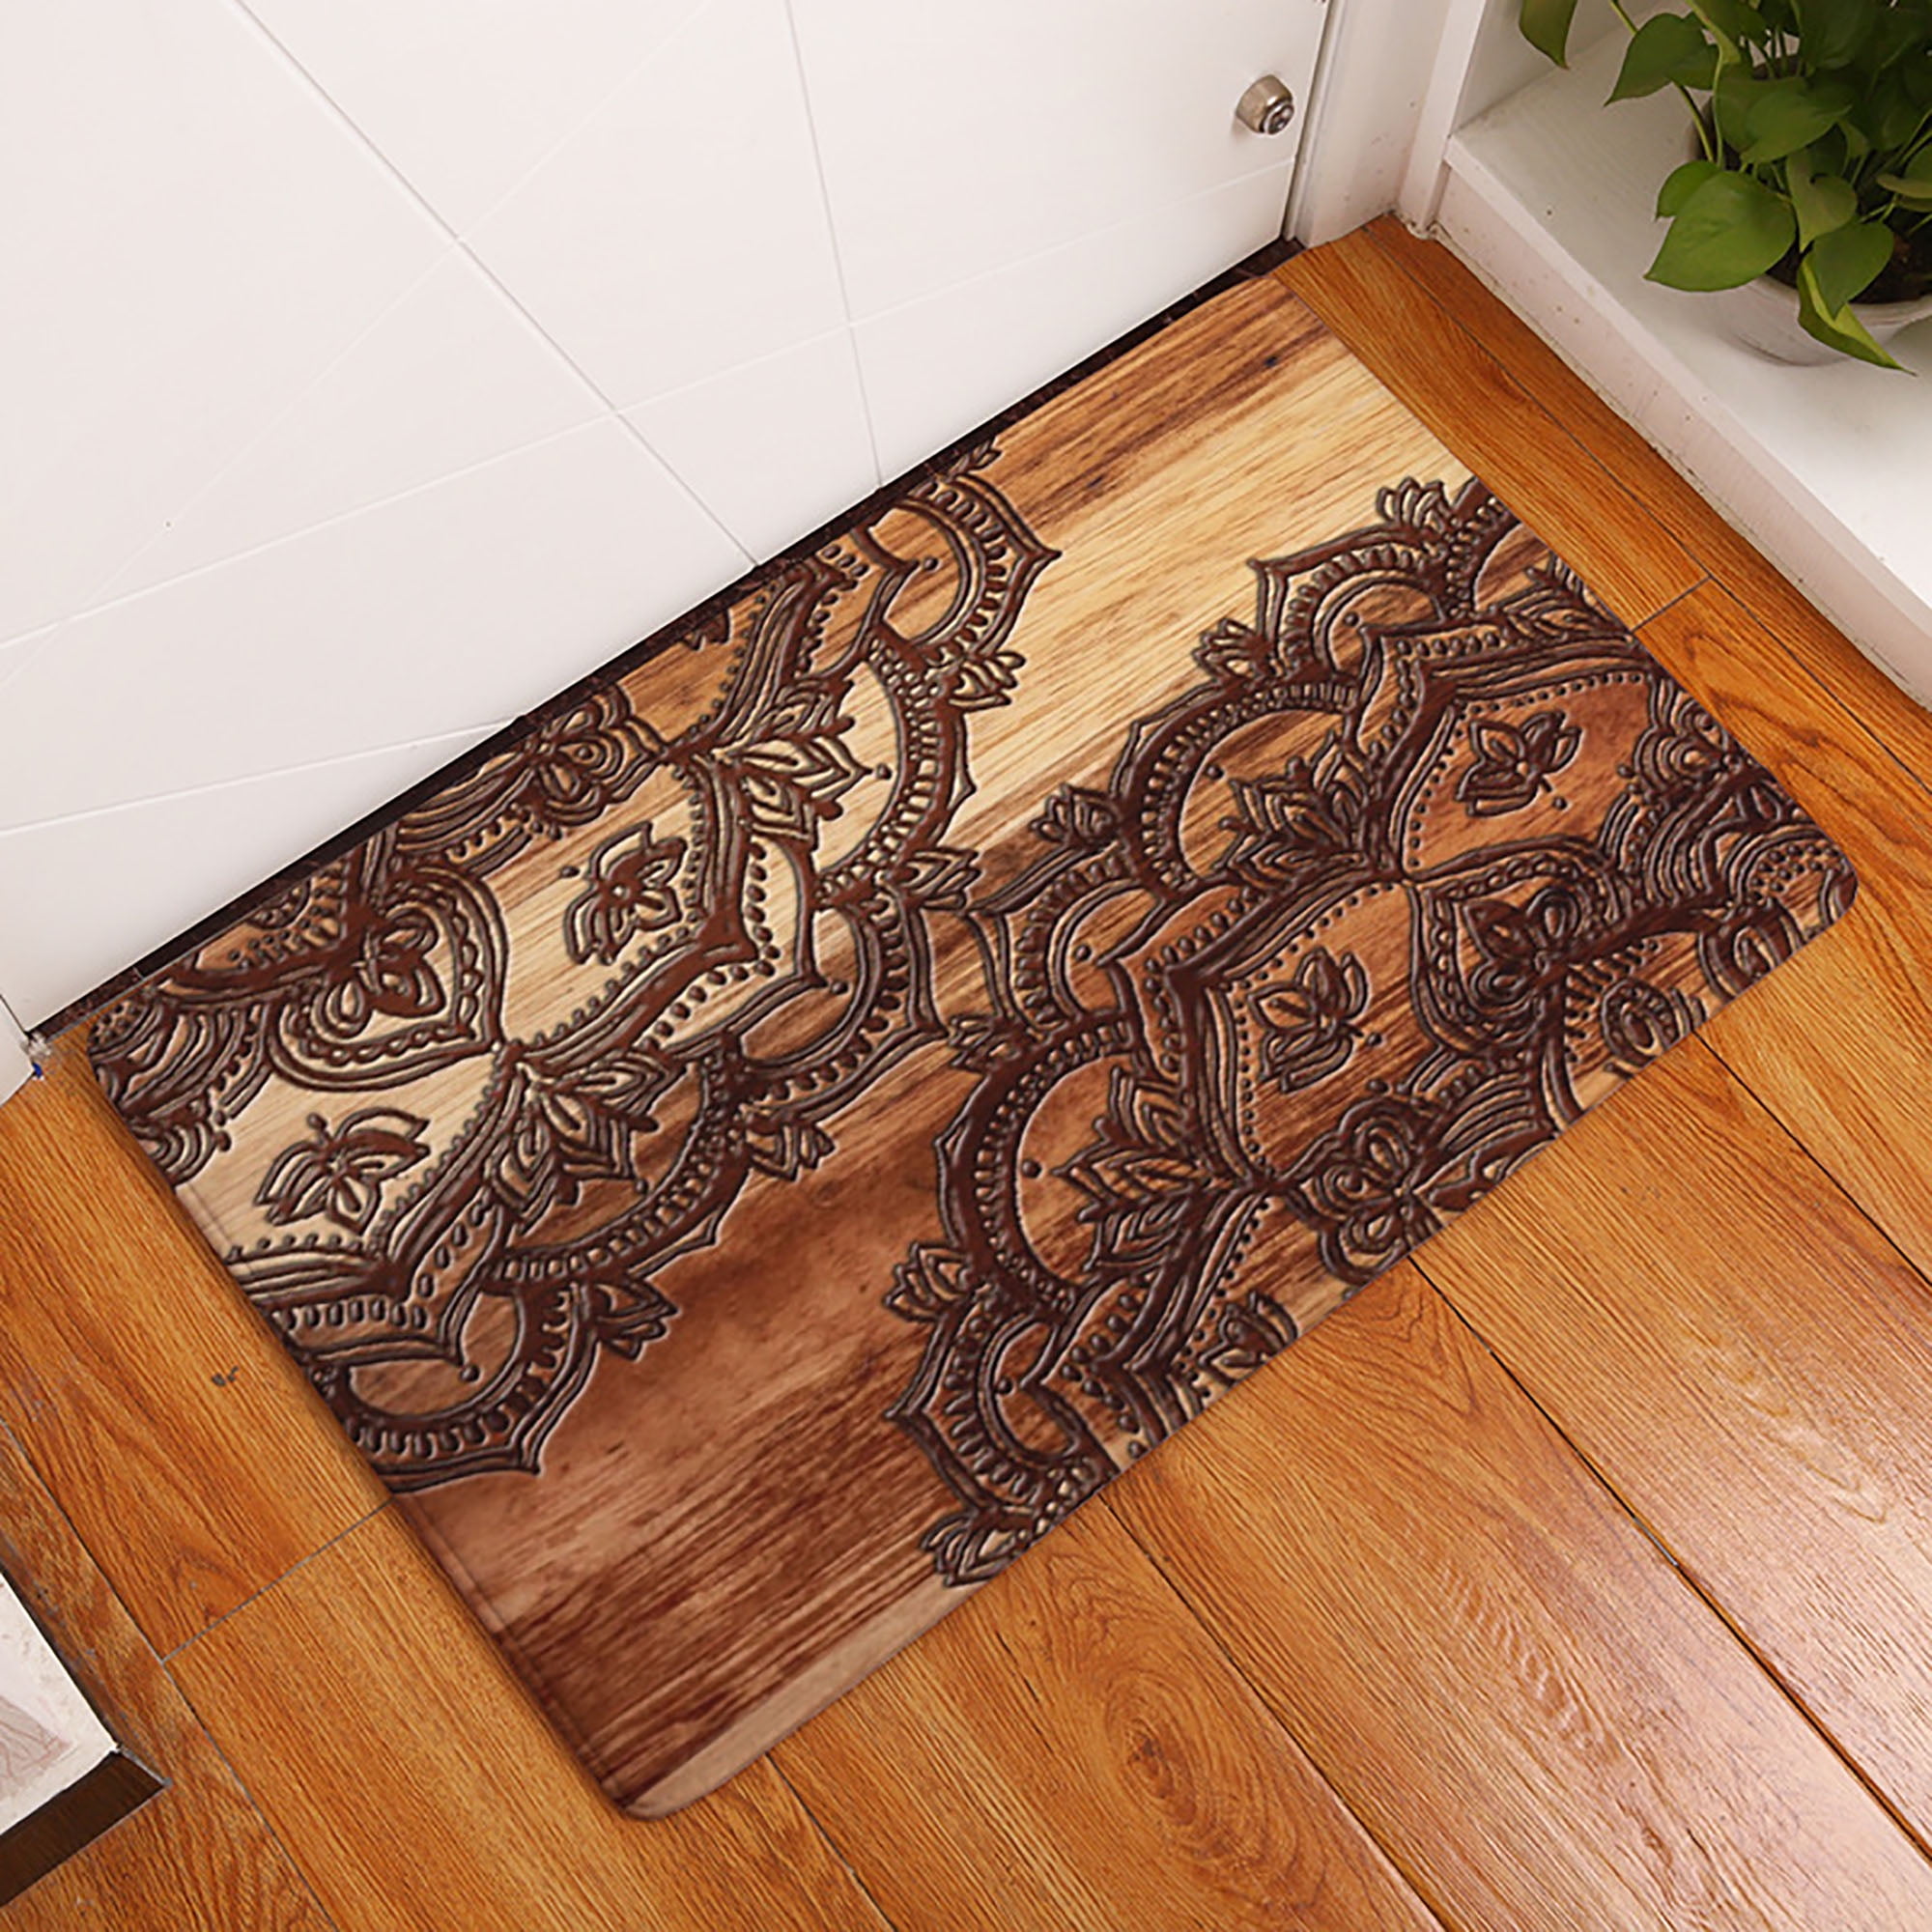 Details about   Anti Slip Mat Doormat Entrance Door Outdoor Rug Home Decor Floor Carpet Entry 